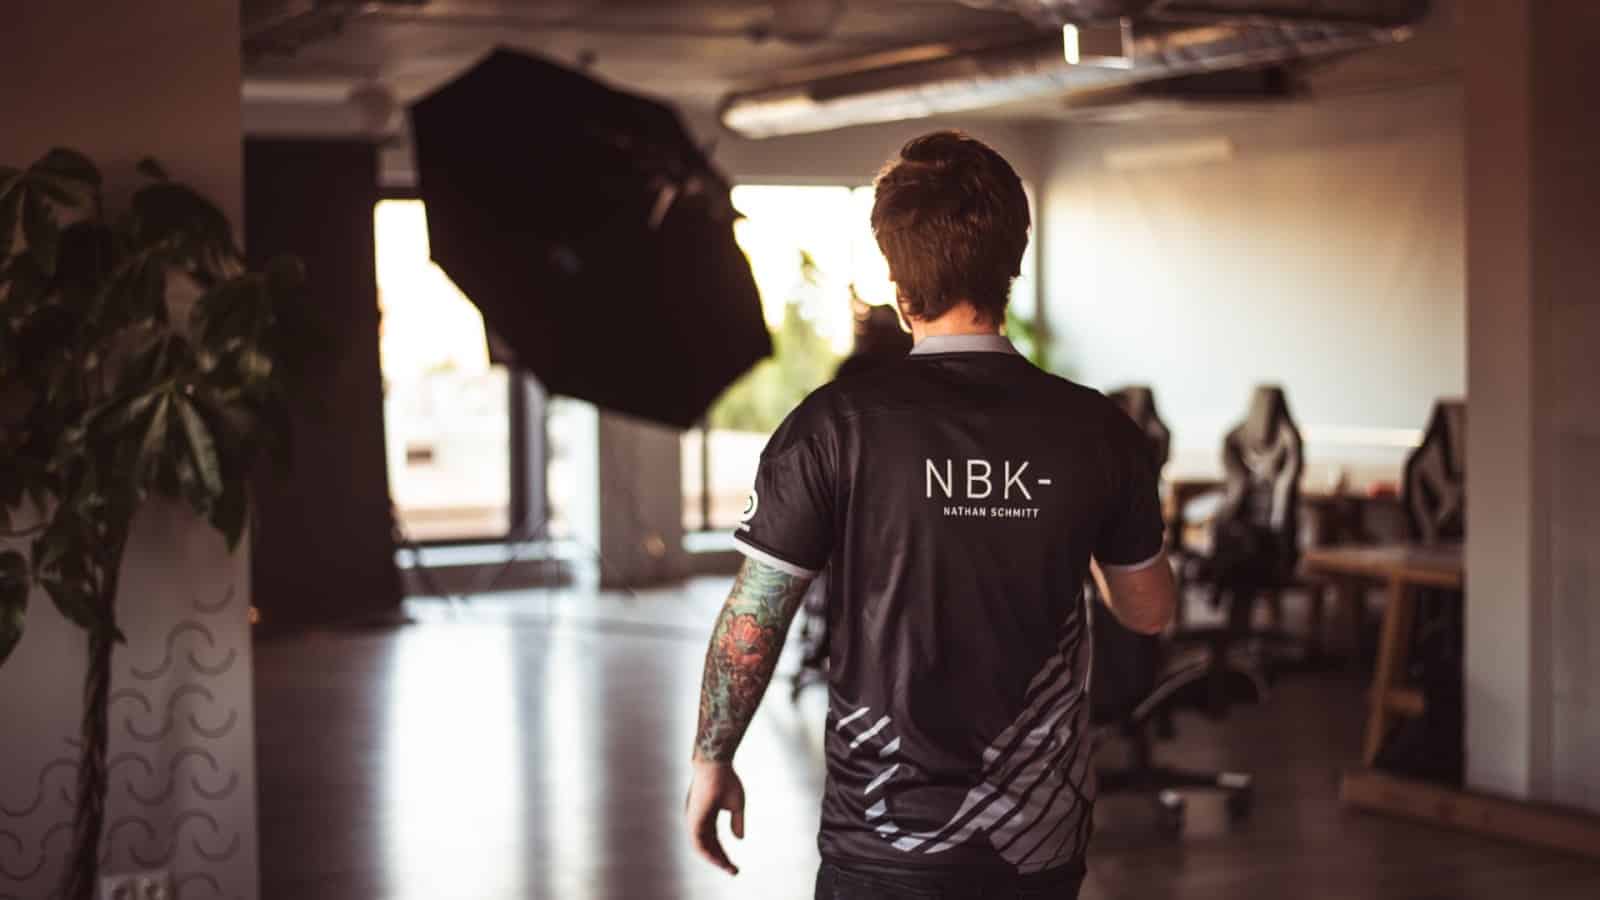 NBK- не собирается заканчивать карьеру игрока в ближайшее время